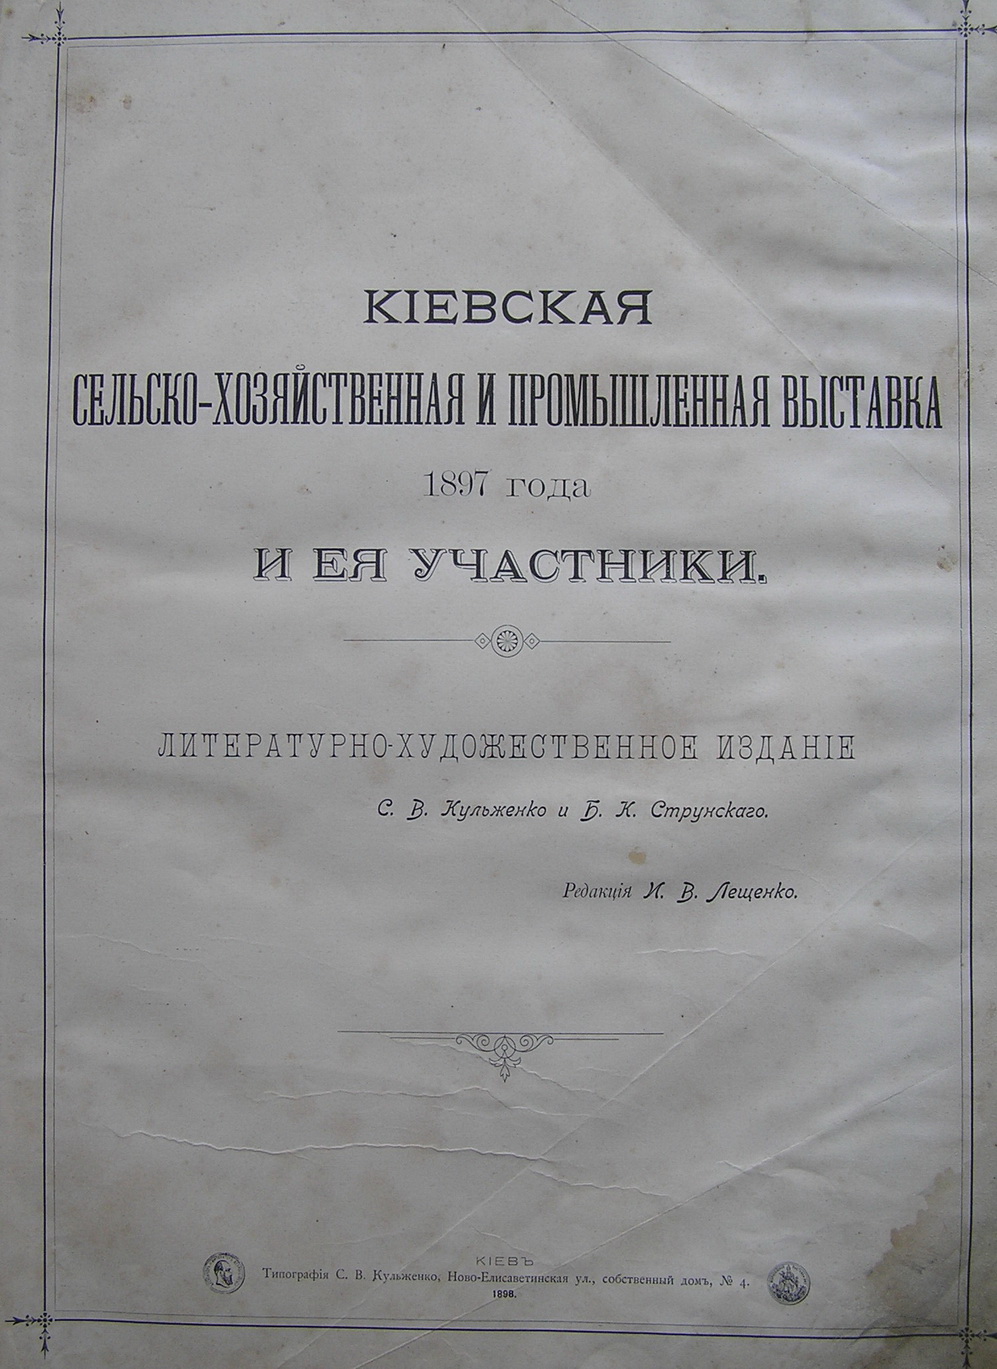 С.В.Кульженко, Б.К.Струнский «Киевская сельско-хозяйственная и промышленная выставка 1897 года и ее участники»